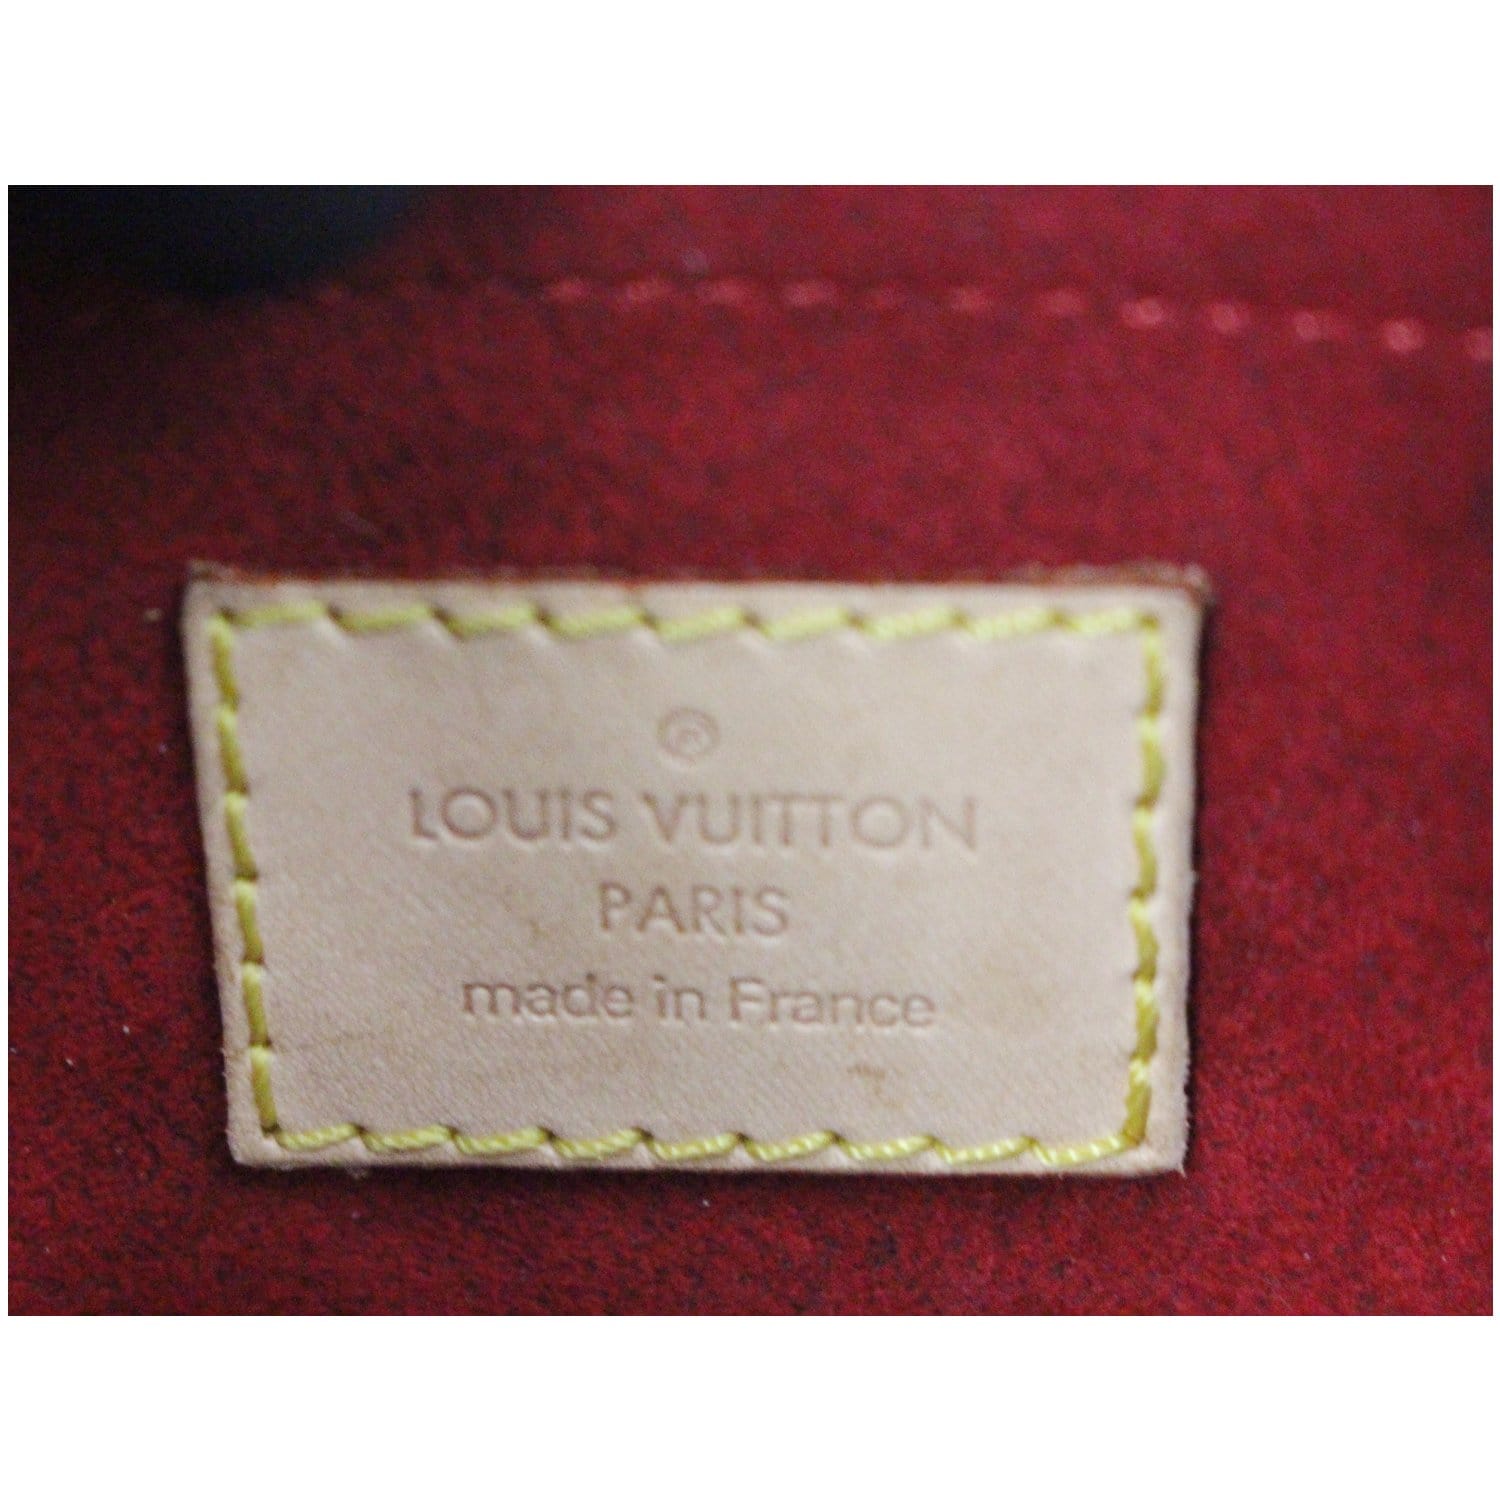 Sold at Auction: AUTHENTIC LOUIS VUITTON CROISSANT PM MONOGRAM CANVAS  SHOULDER BAG